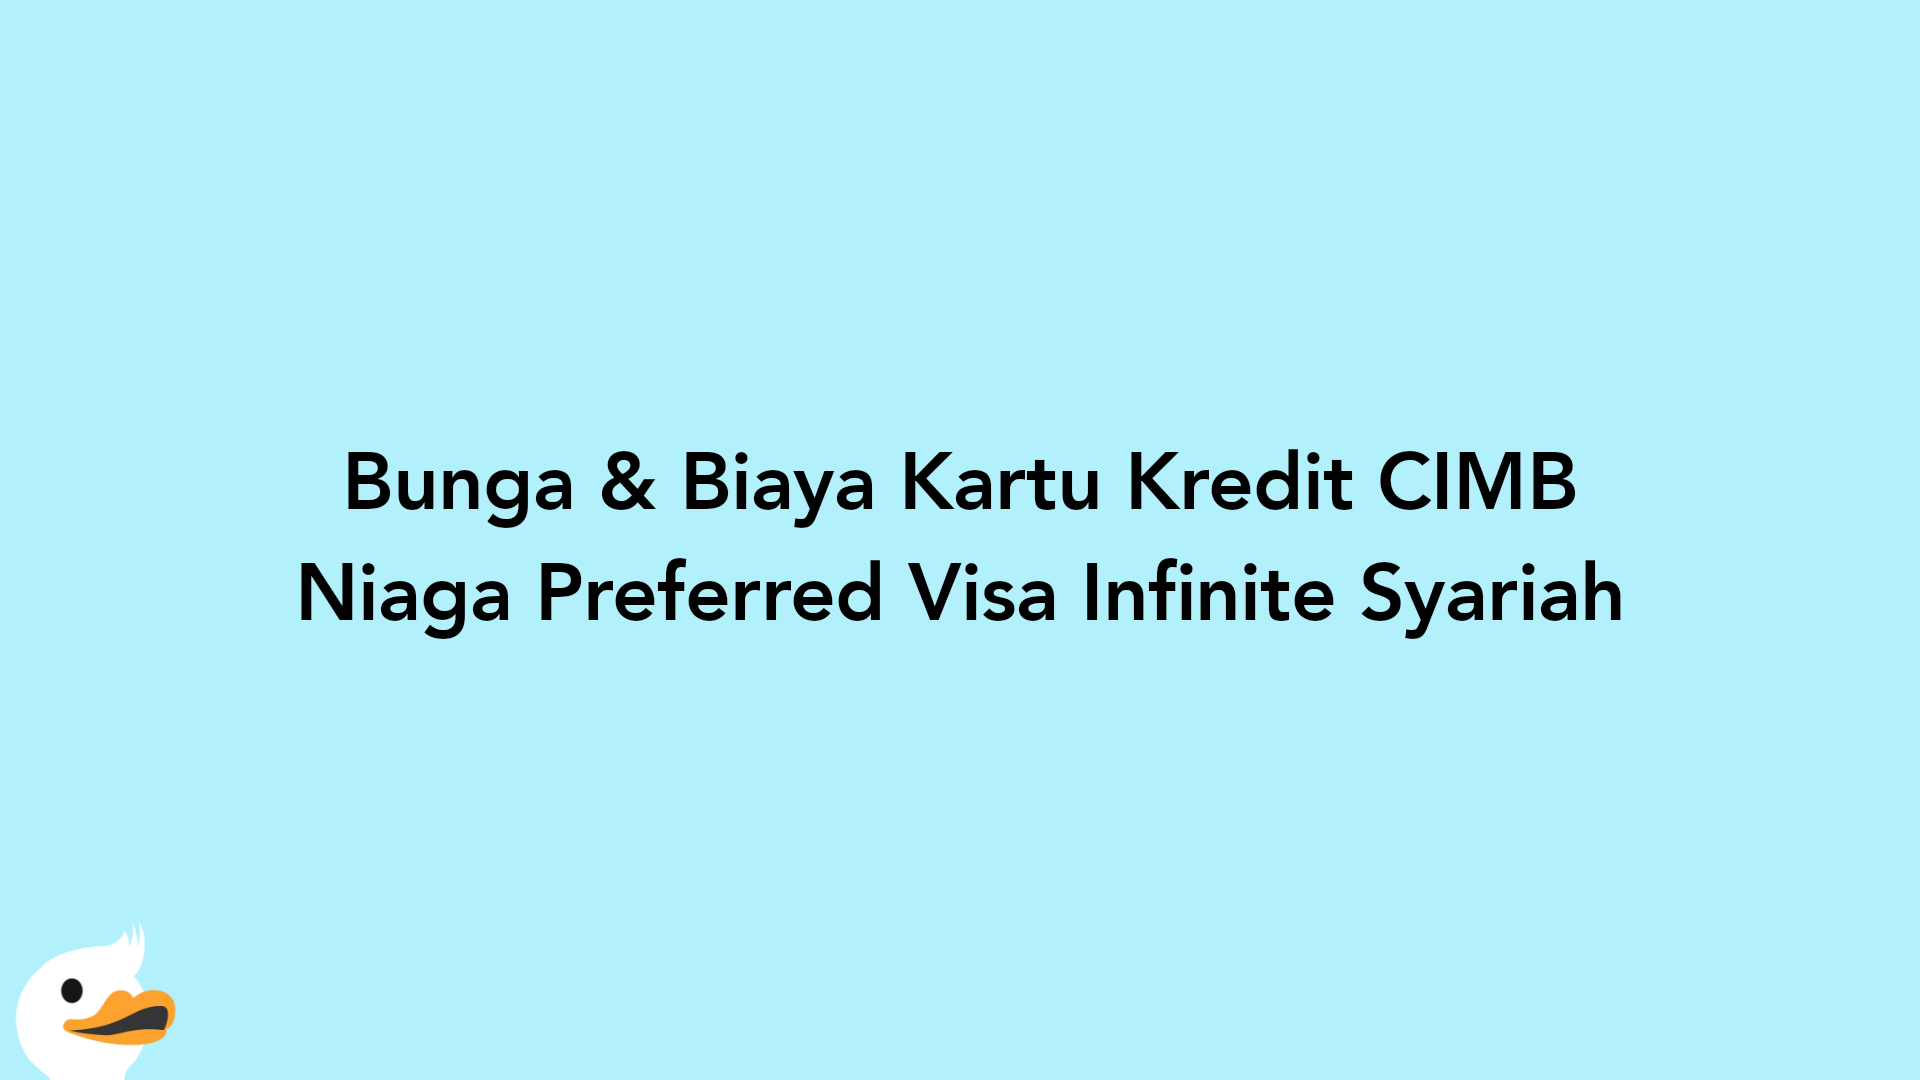 Bunga & Biaya Kartu Kredit CIMB Niaga Preferred Visa Infinite Syariah